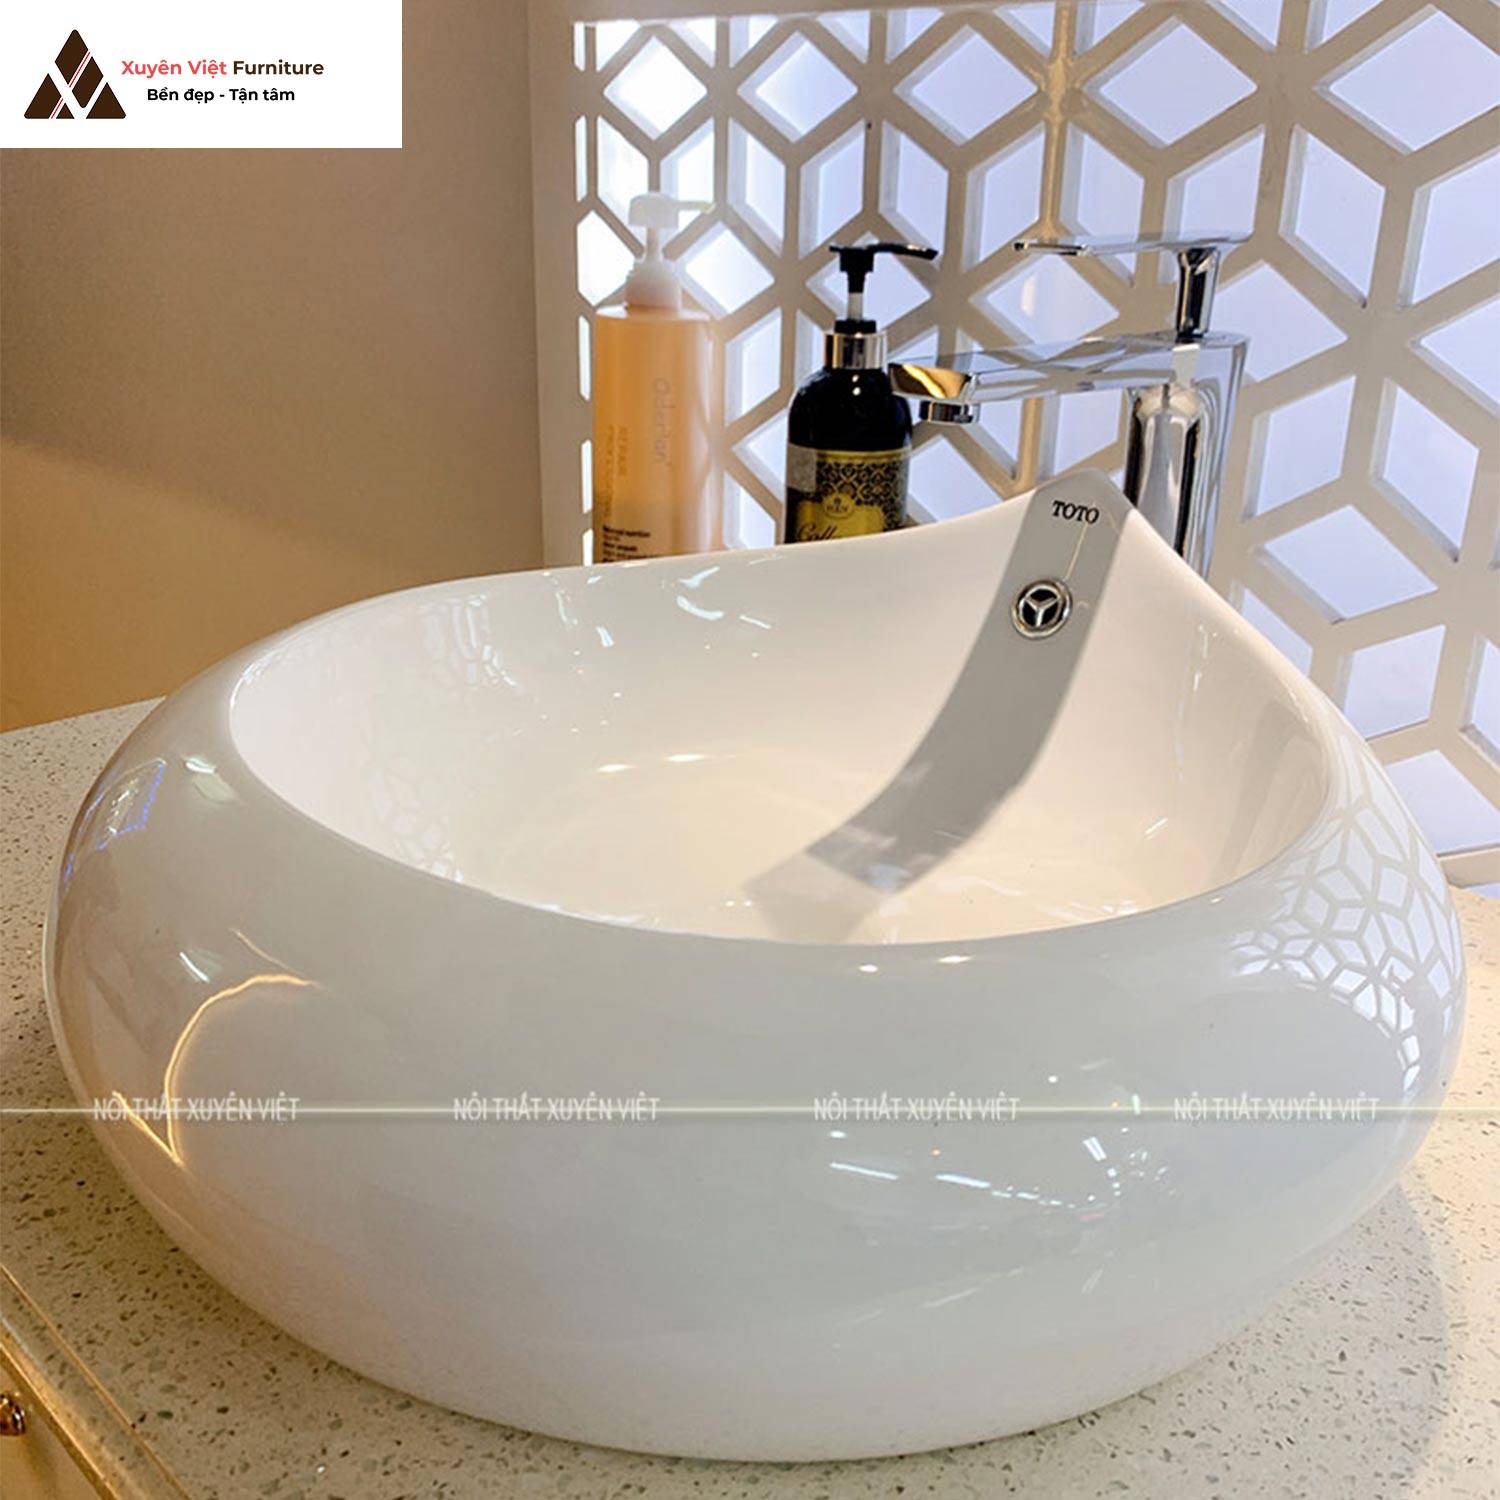 Tính năng của chậu rửa lavabo đặt bàn hình giọt nước XVCT19